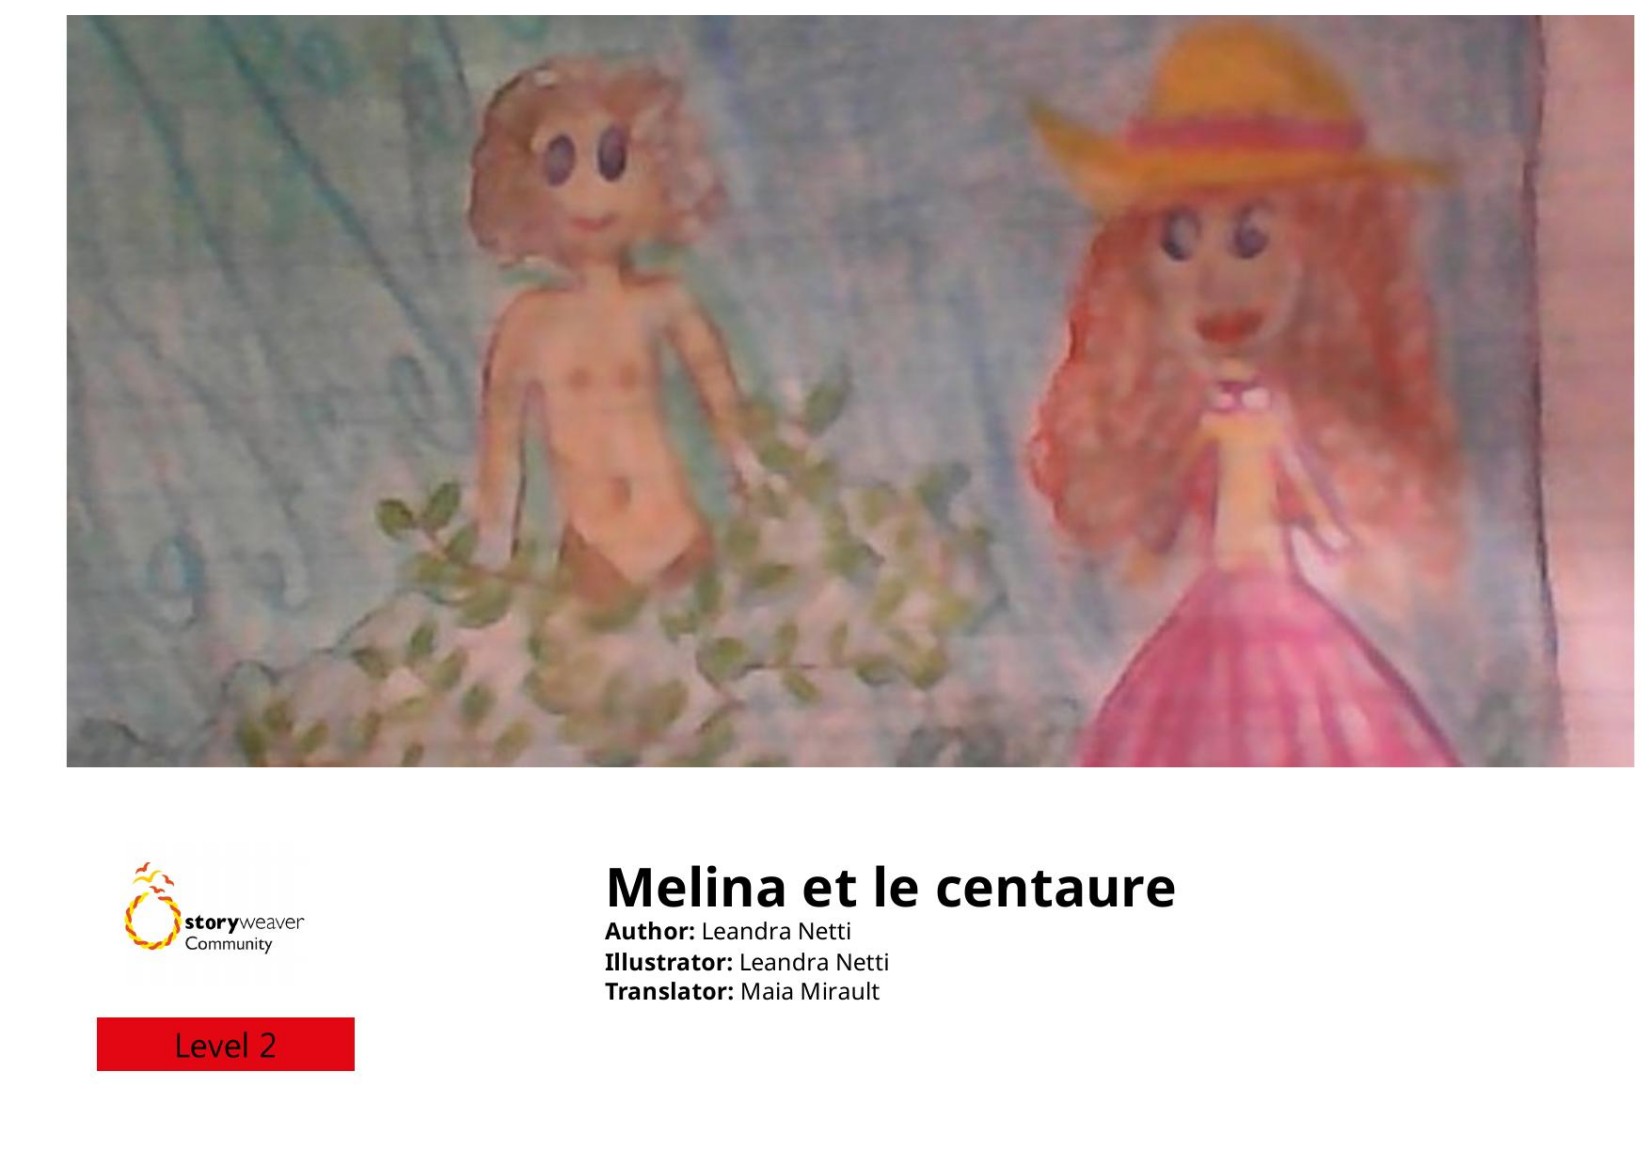 Melina et le centaure